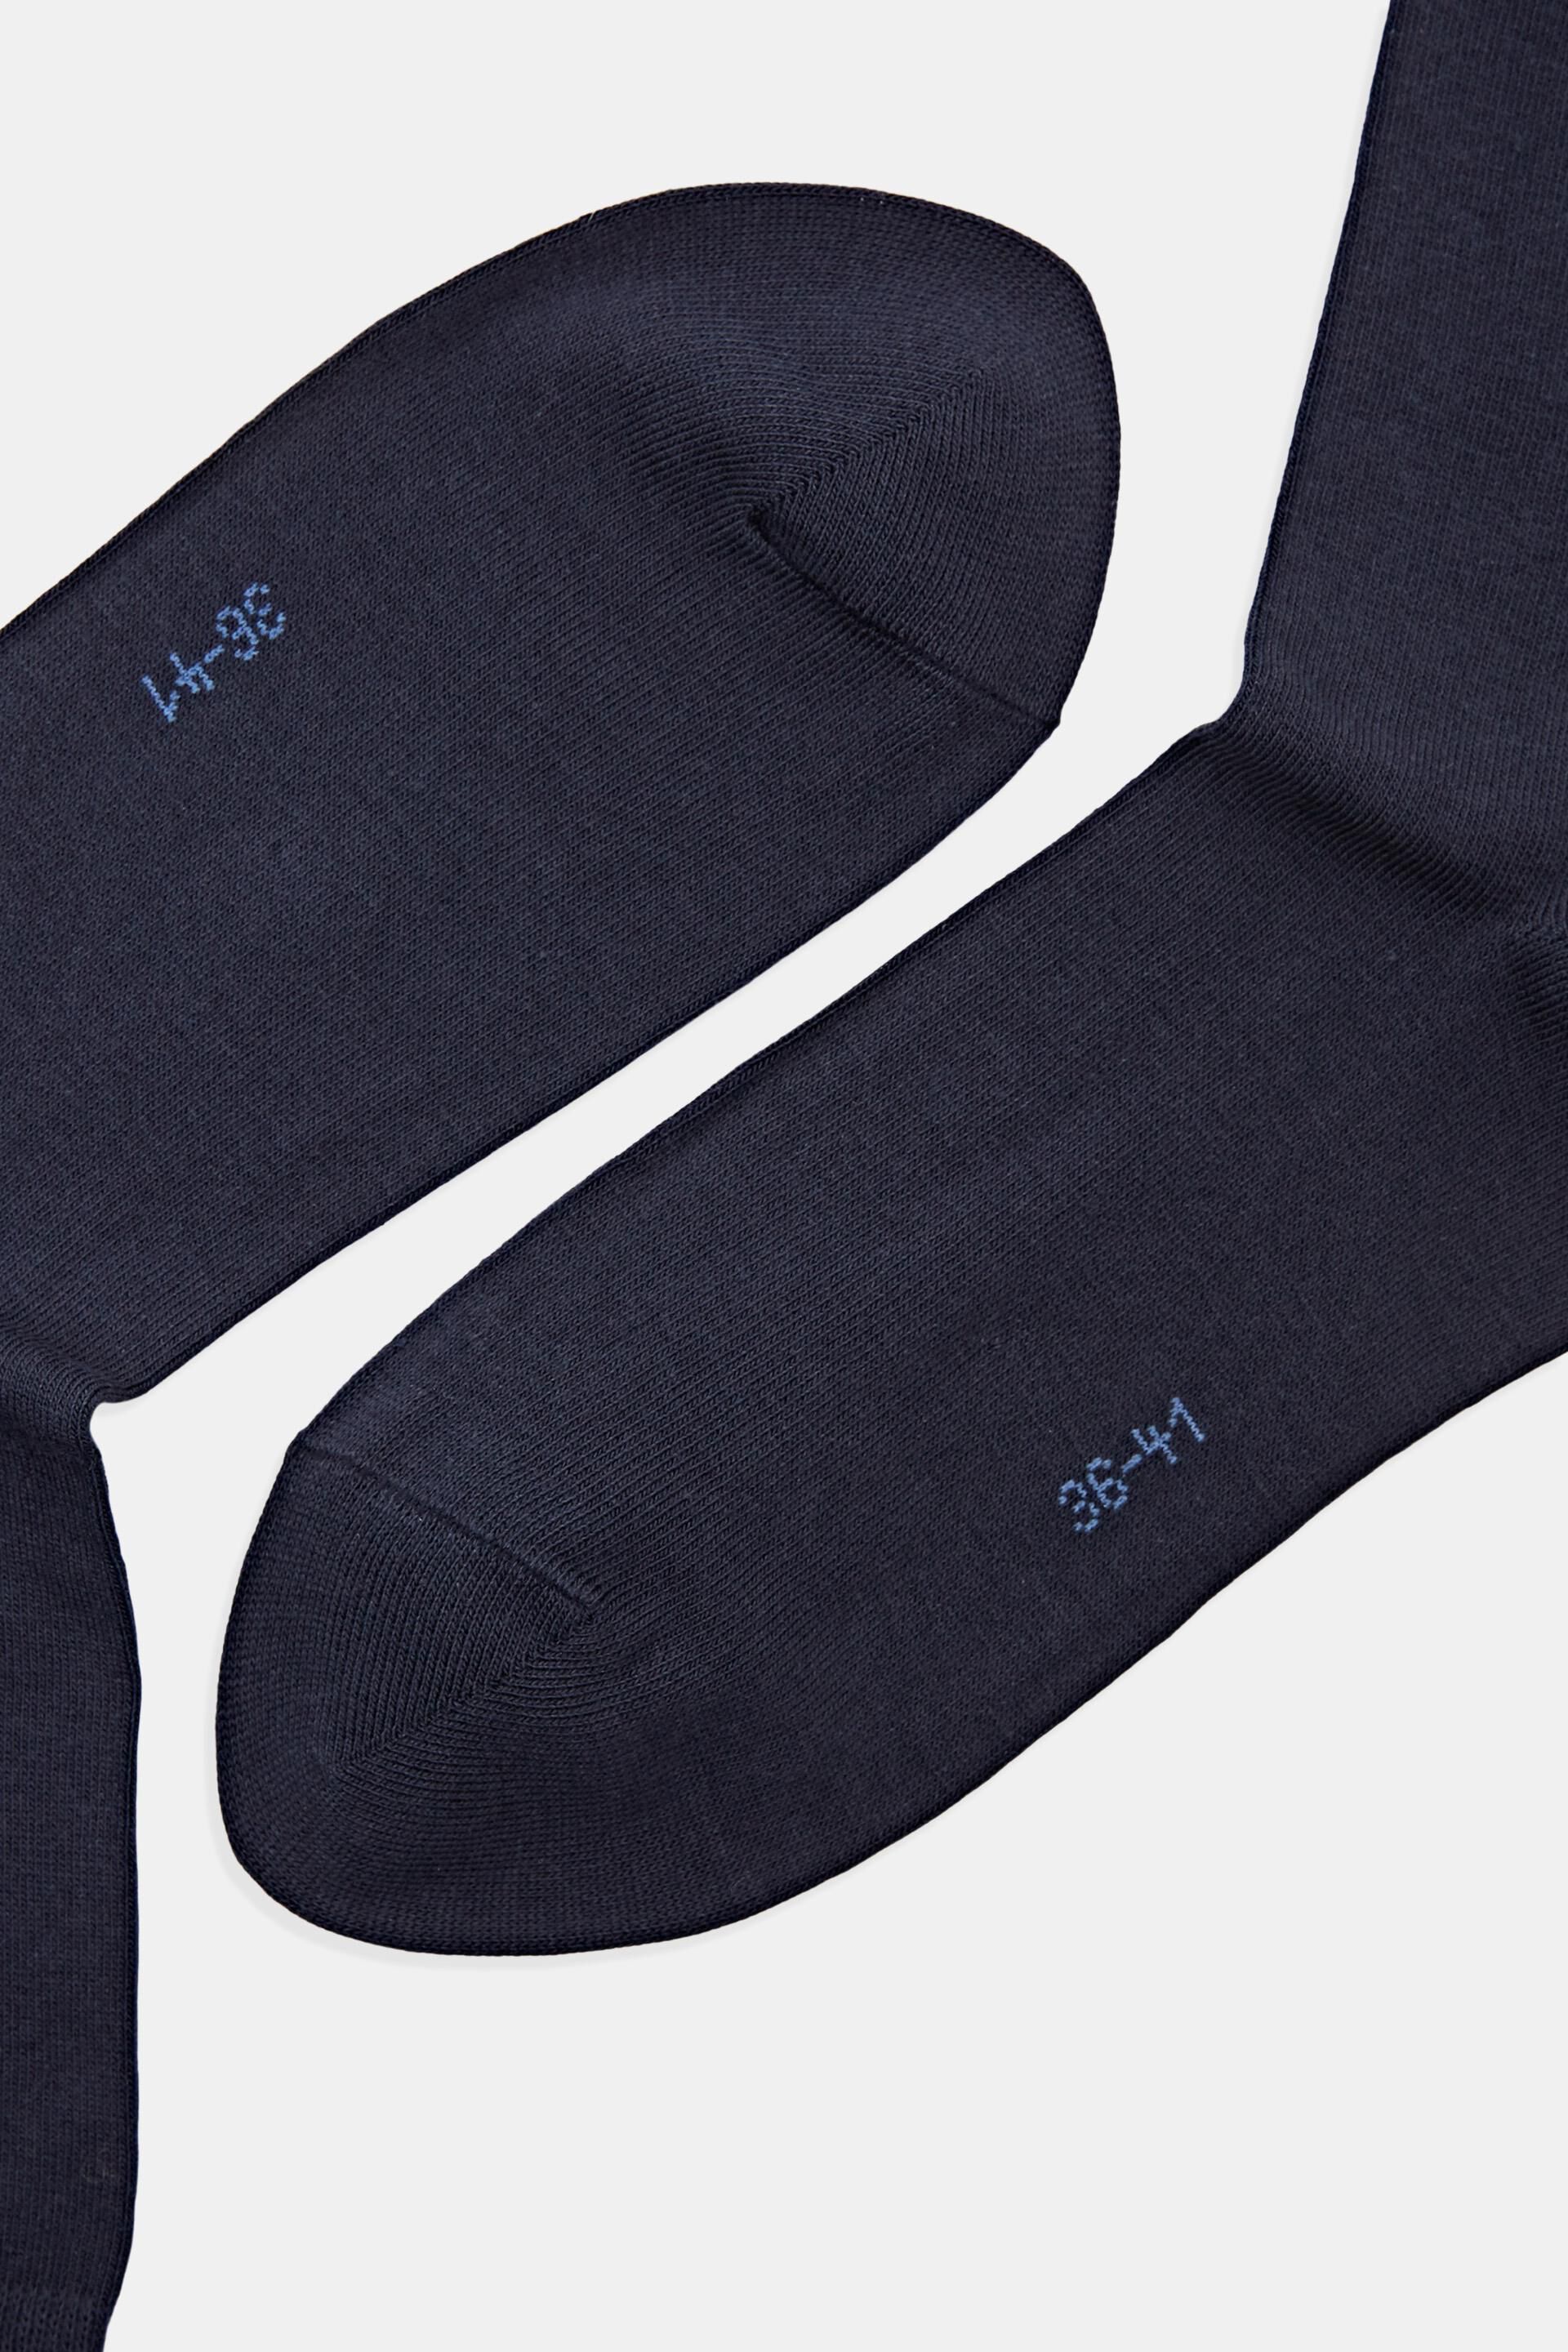 Esprit Online Store 5er-Pack einfarbige Socken Bio-Baumwolle aus